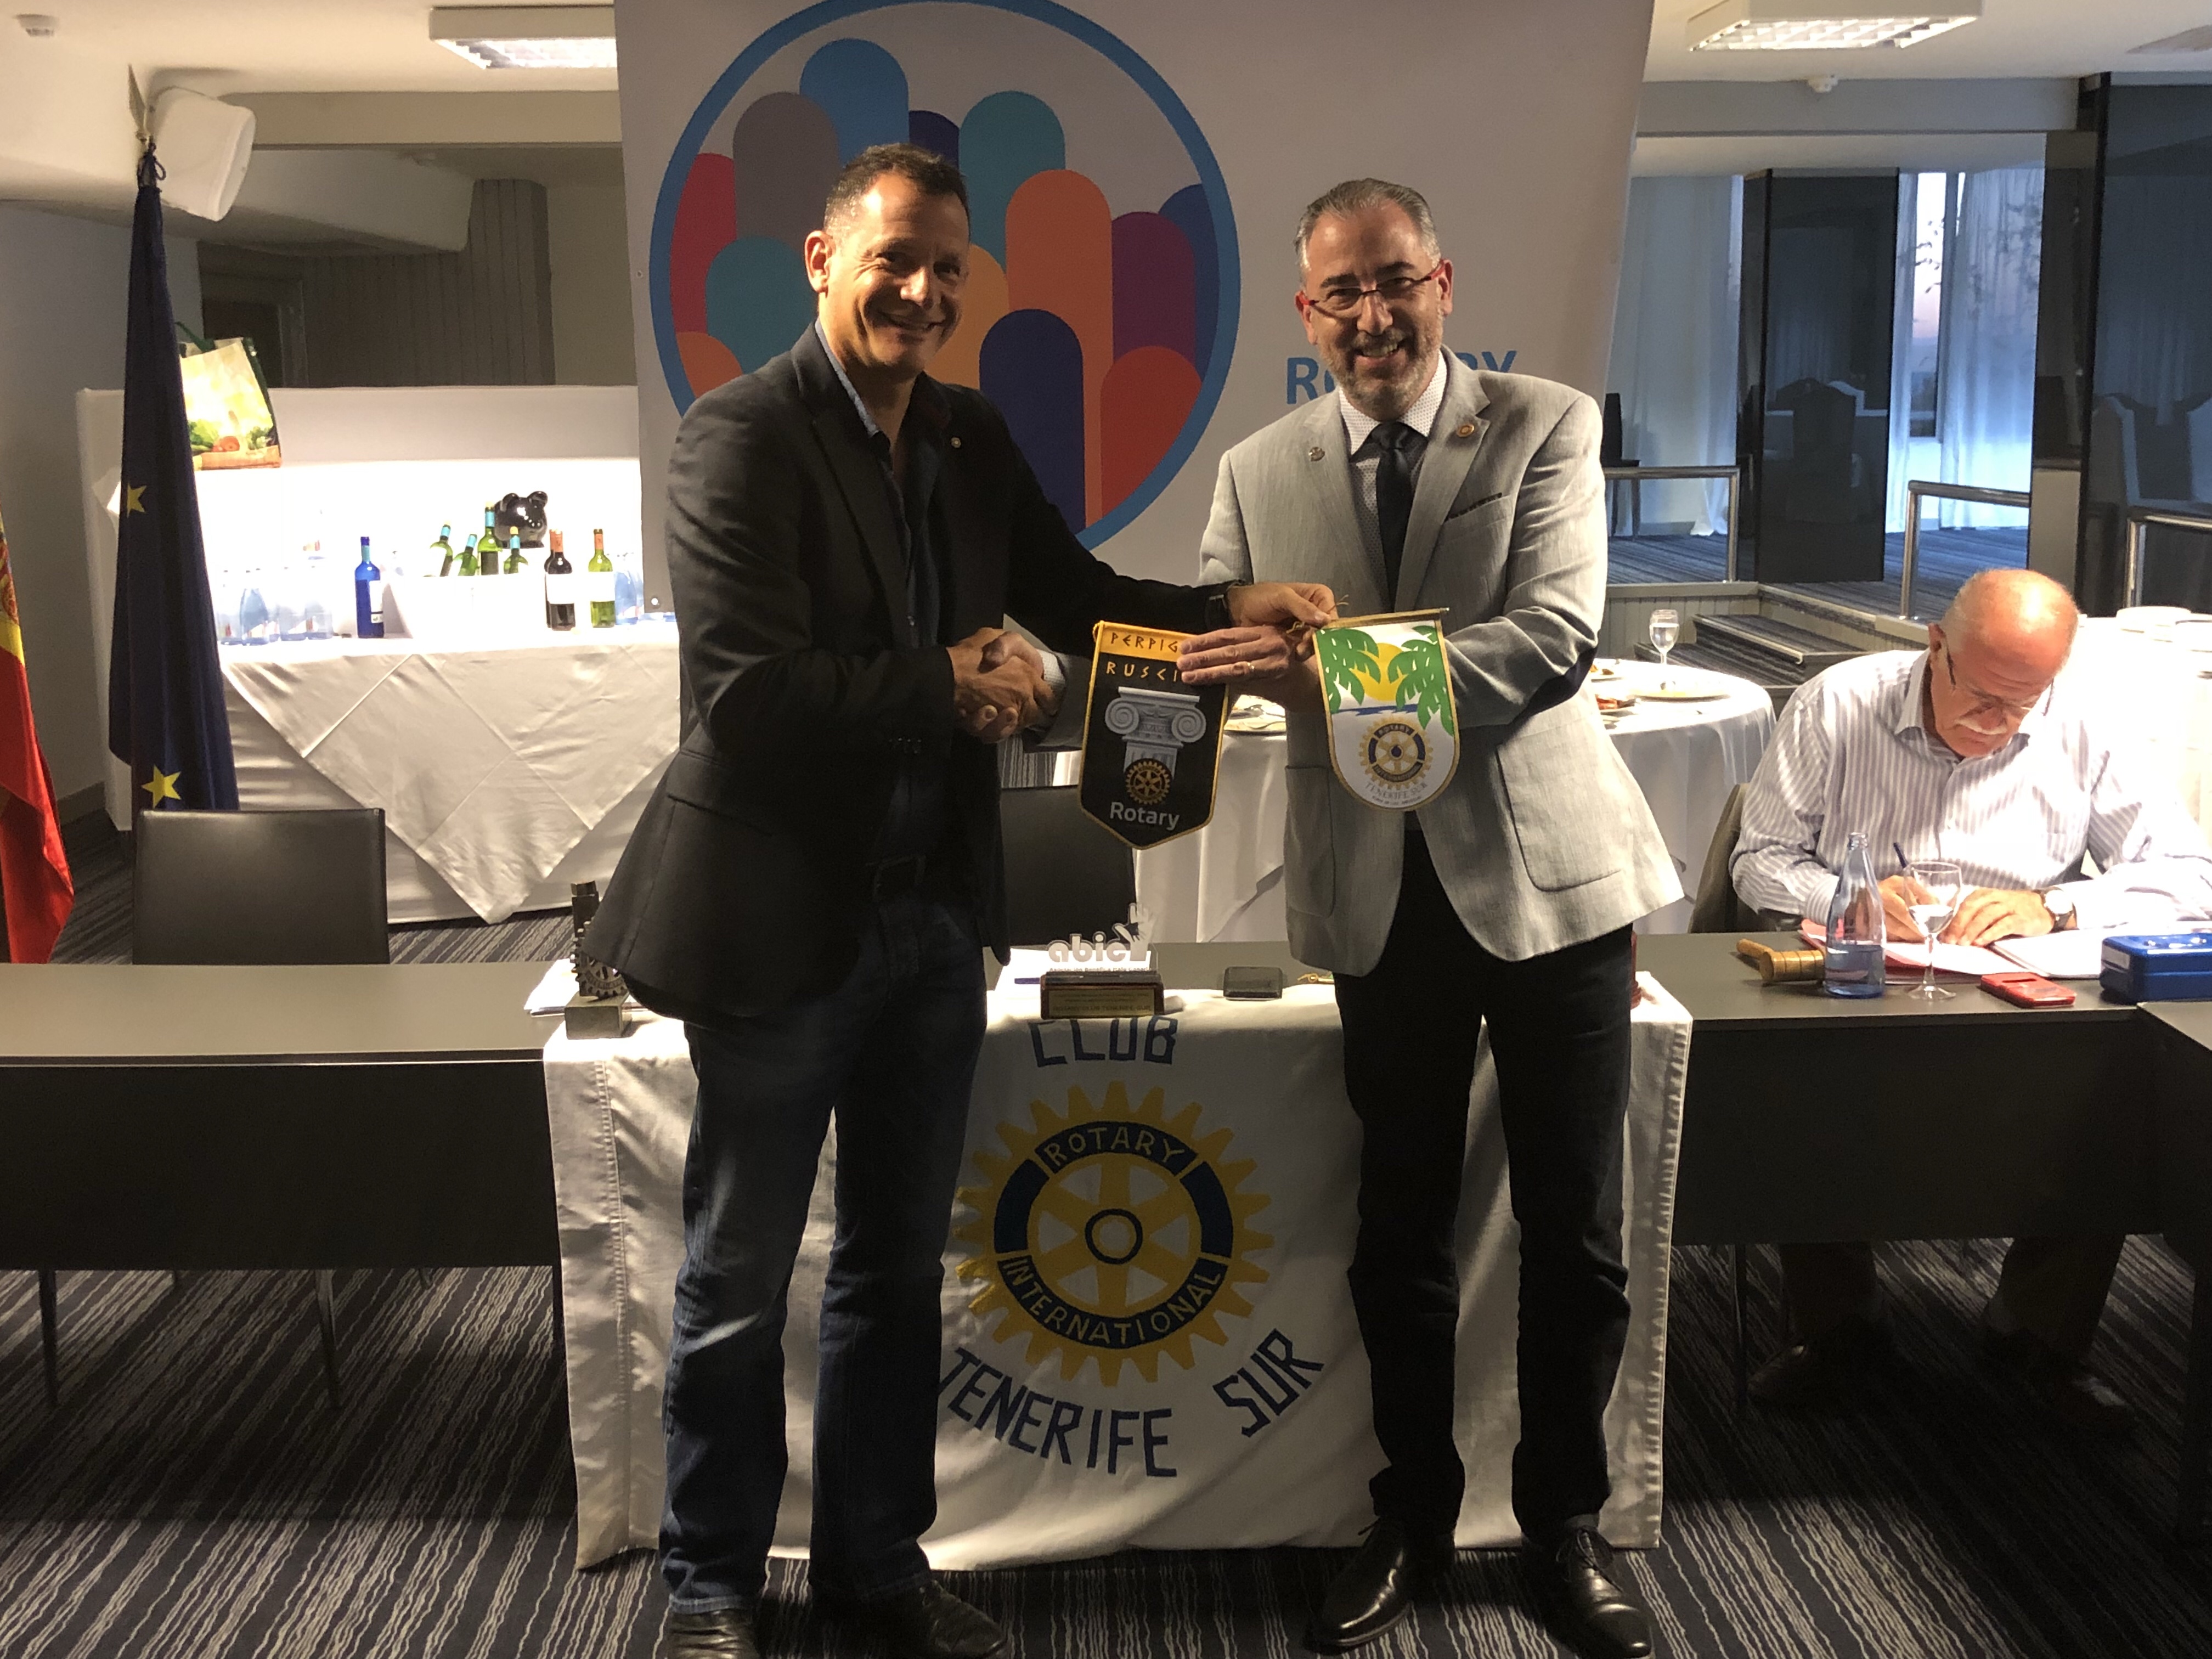 Visita del compañero Rotario Mauricio Garcia del Rotary Club de Perpignan en Francia